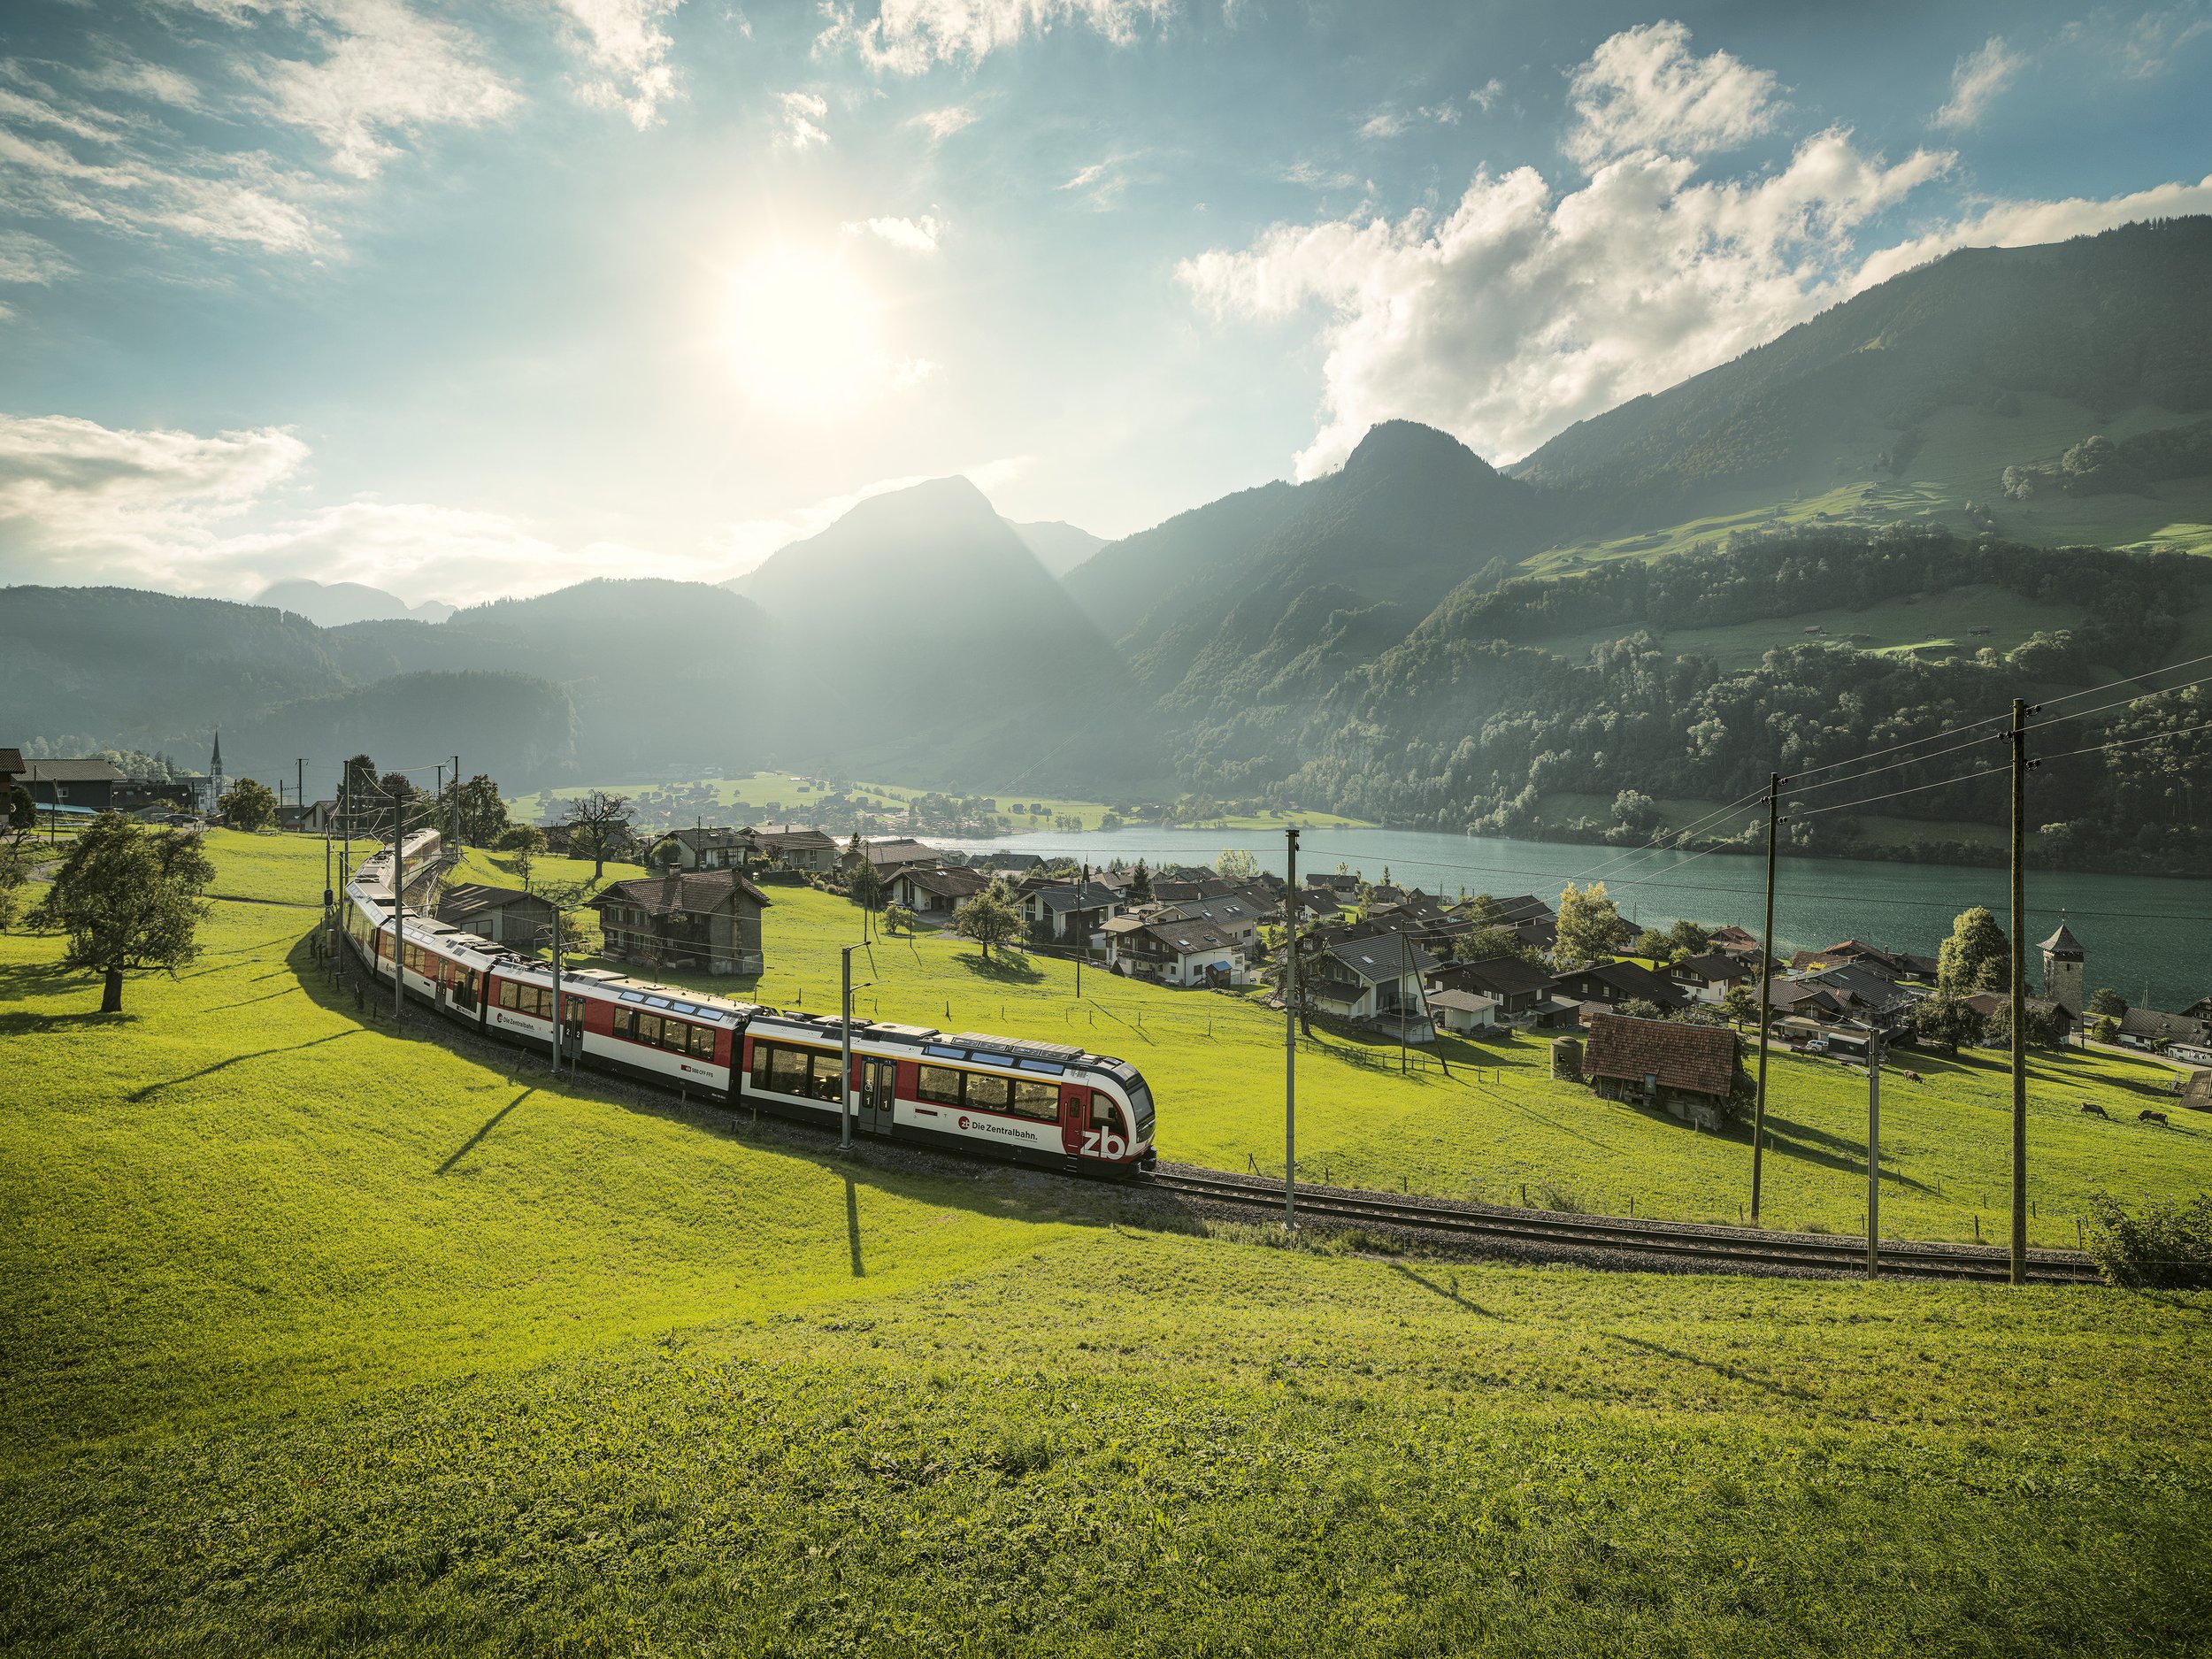 Michel_Jaussi_Swiss_Transportation_Tourismus_Swiss_Travel_System_STS_Schweiz_Berge_ICE_PostAuto_Zentralbahn_LUNGERENSEE_007794_ret.jpg